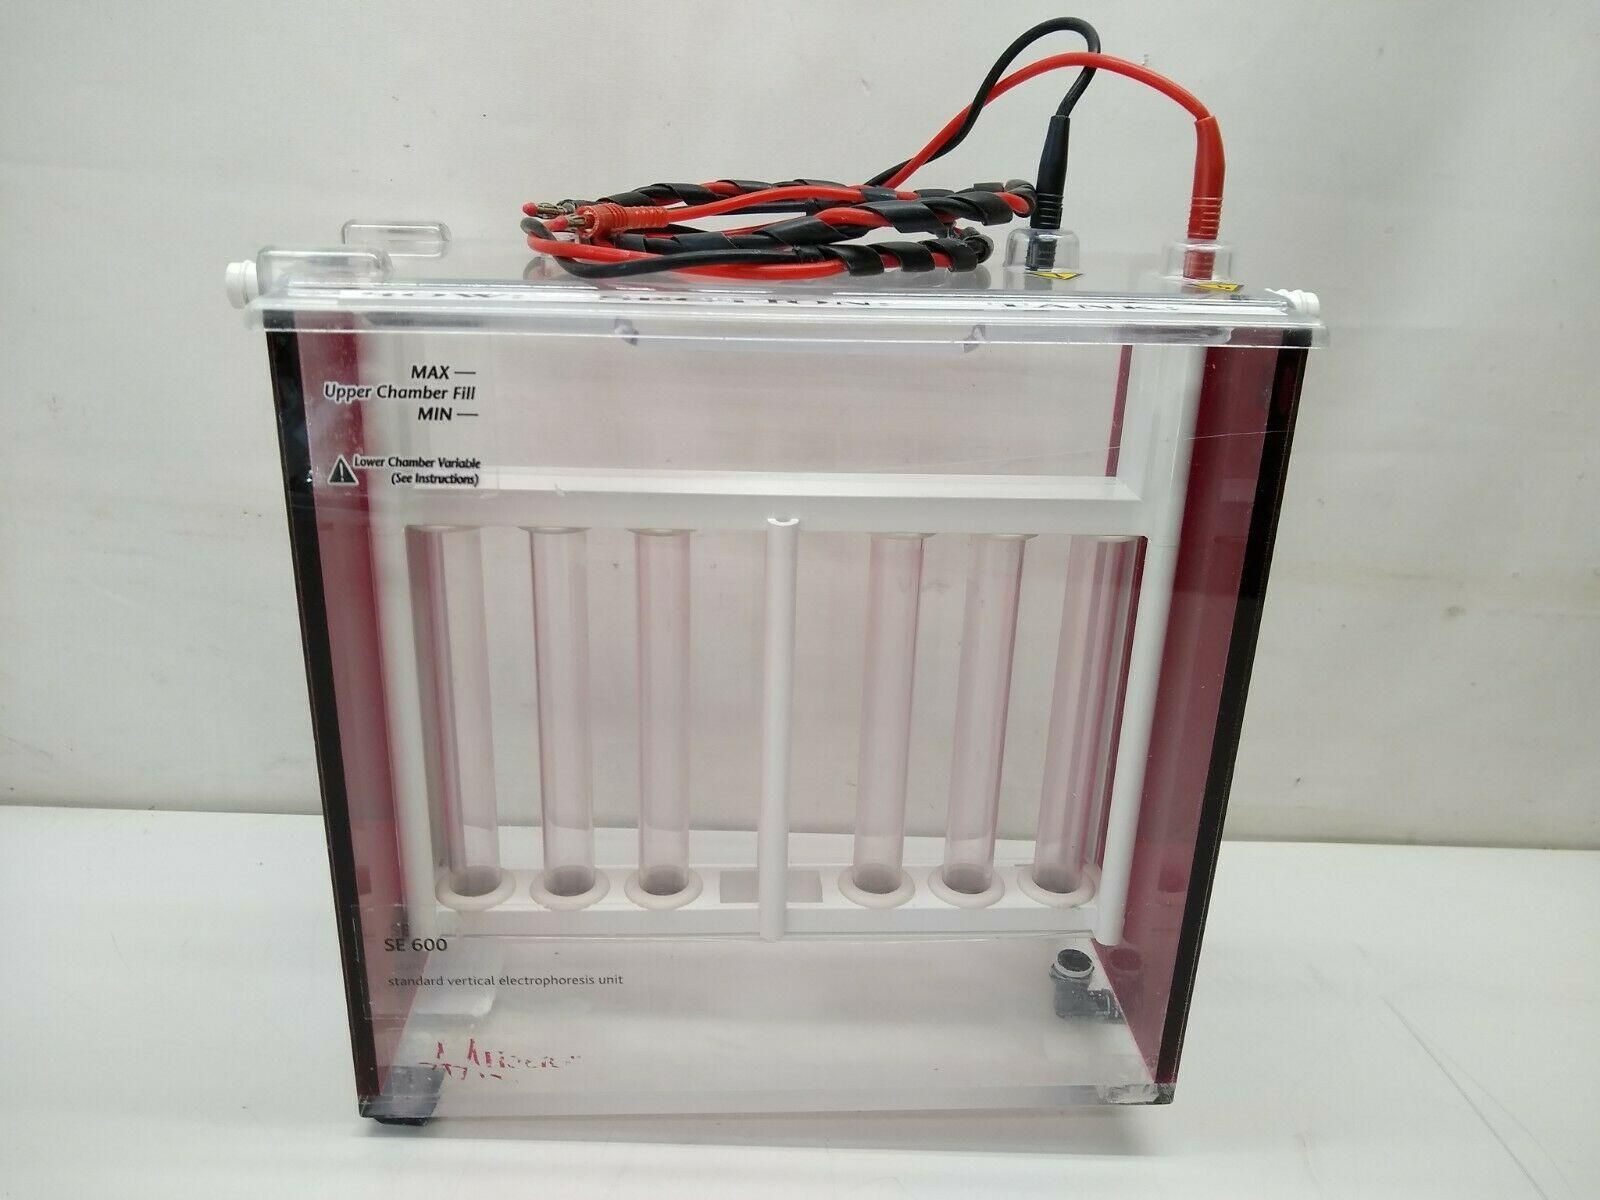 Hoefer SE600-15-1.5 Standard Dual Cooled Vertical Electrophoresis Unit